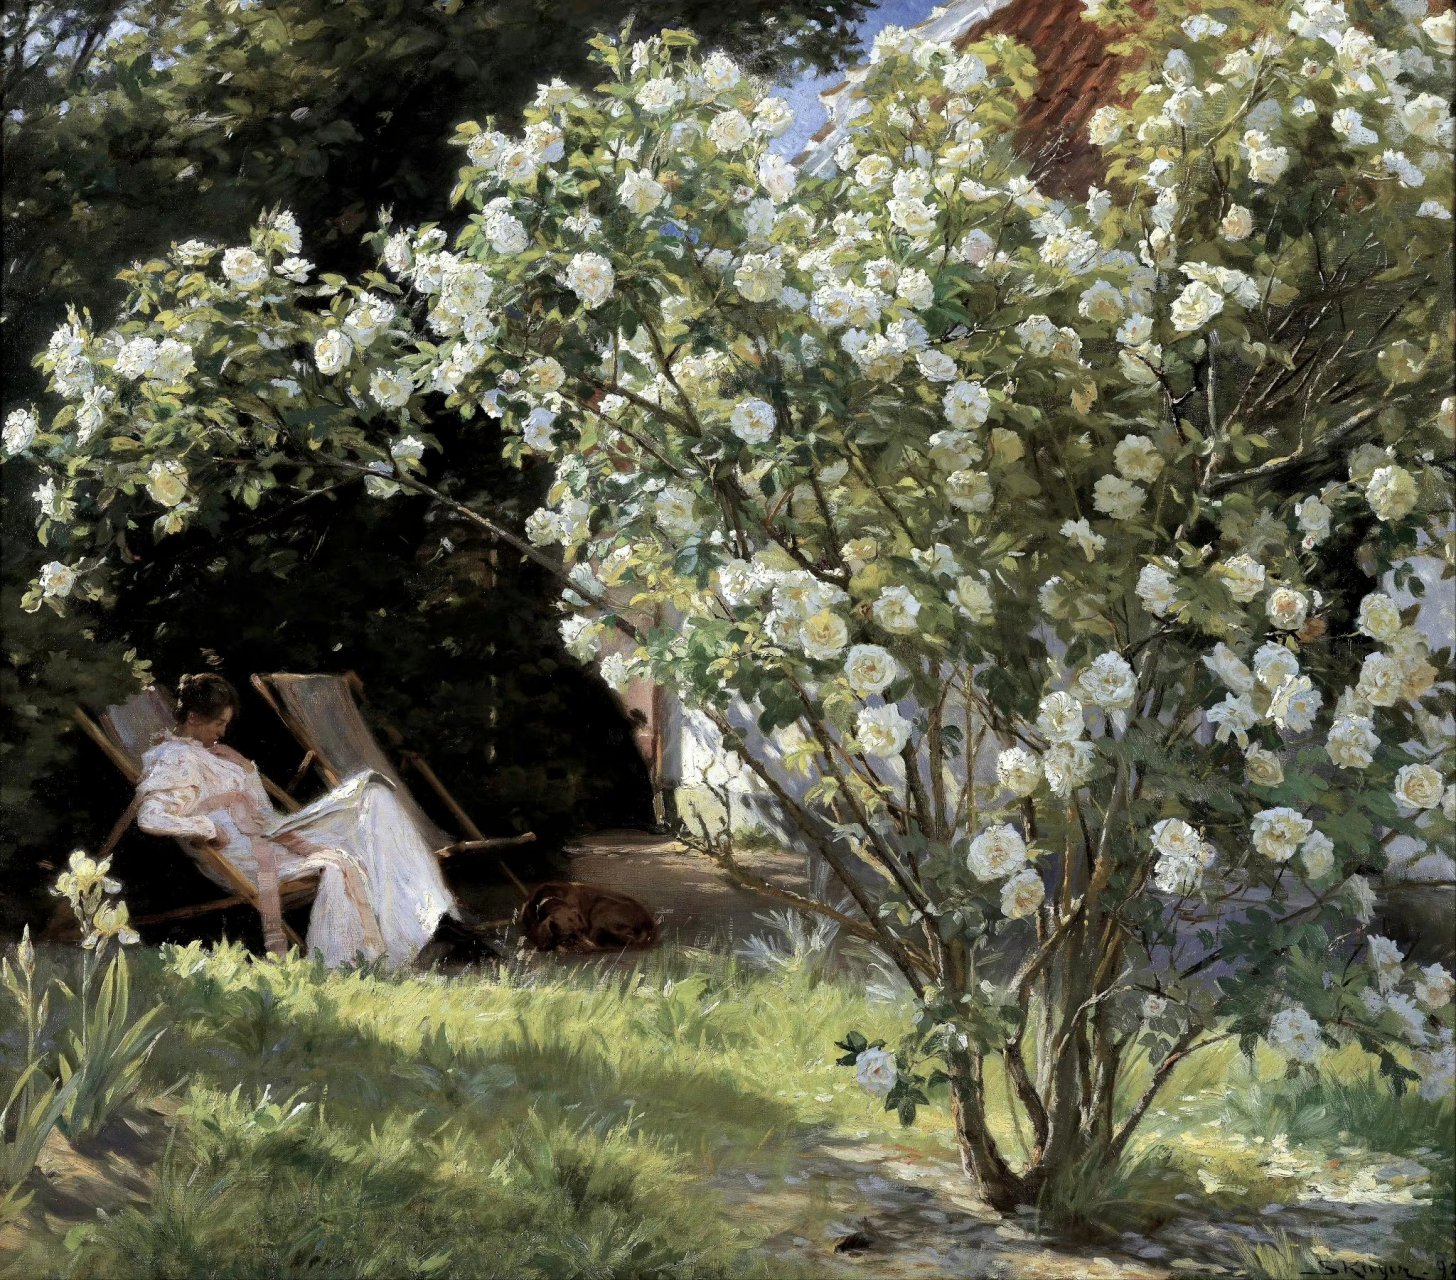 画家佩德·塞维林·克罗耶油画作品欣赏,描绘了休闲惬意的生活场景